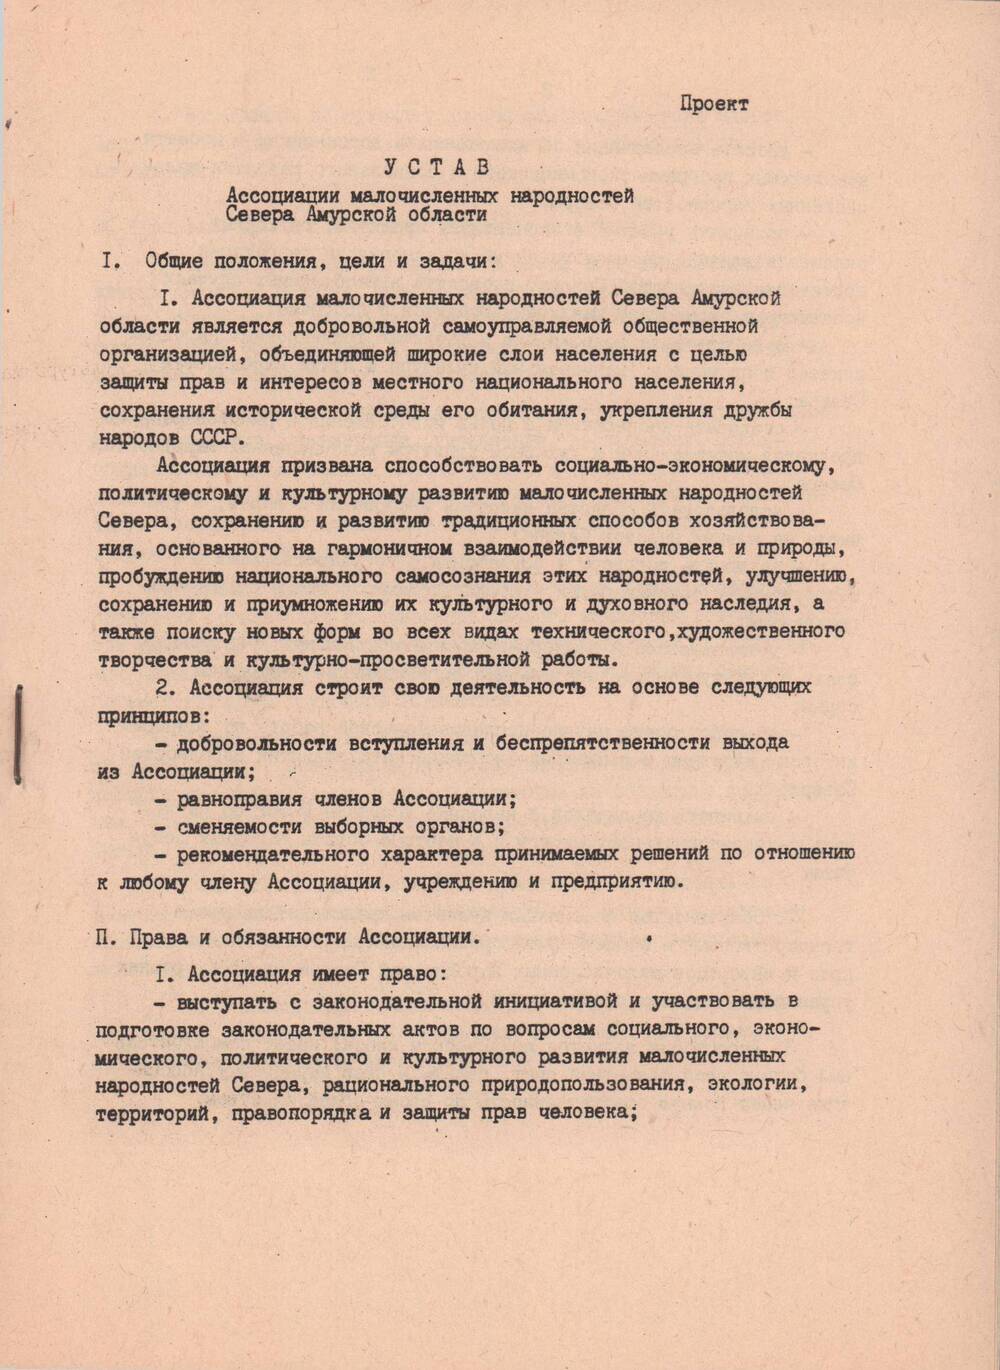 Устав Ассоциации малочисленных народностей Севера Амурской области, 1990 год.